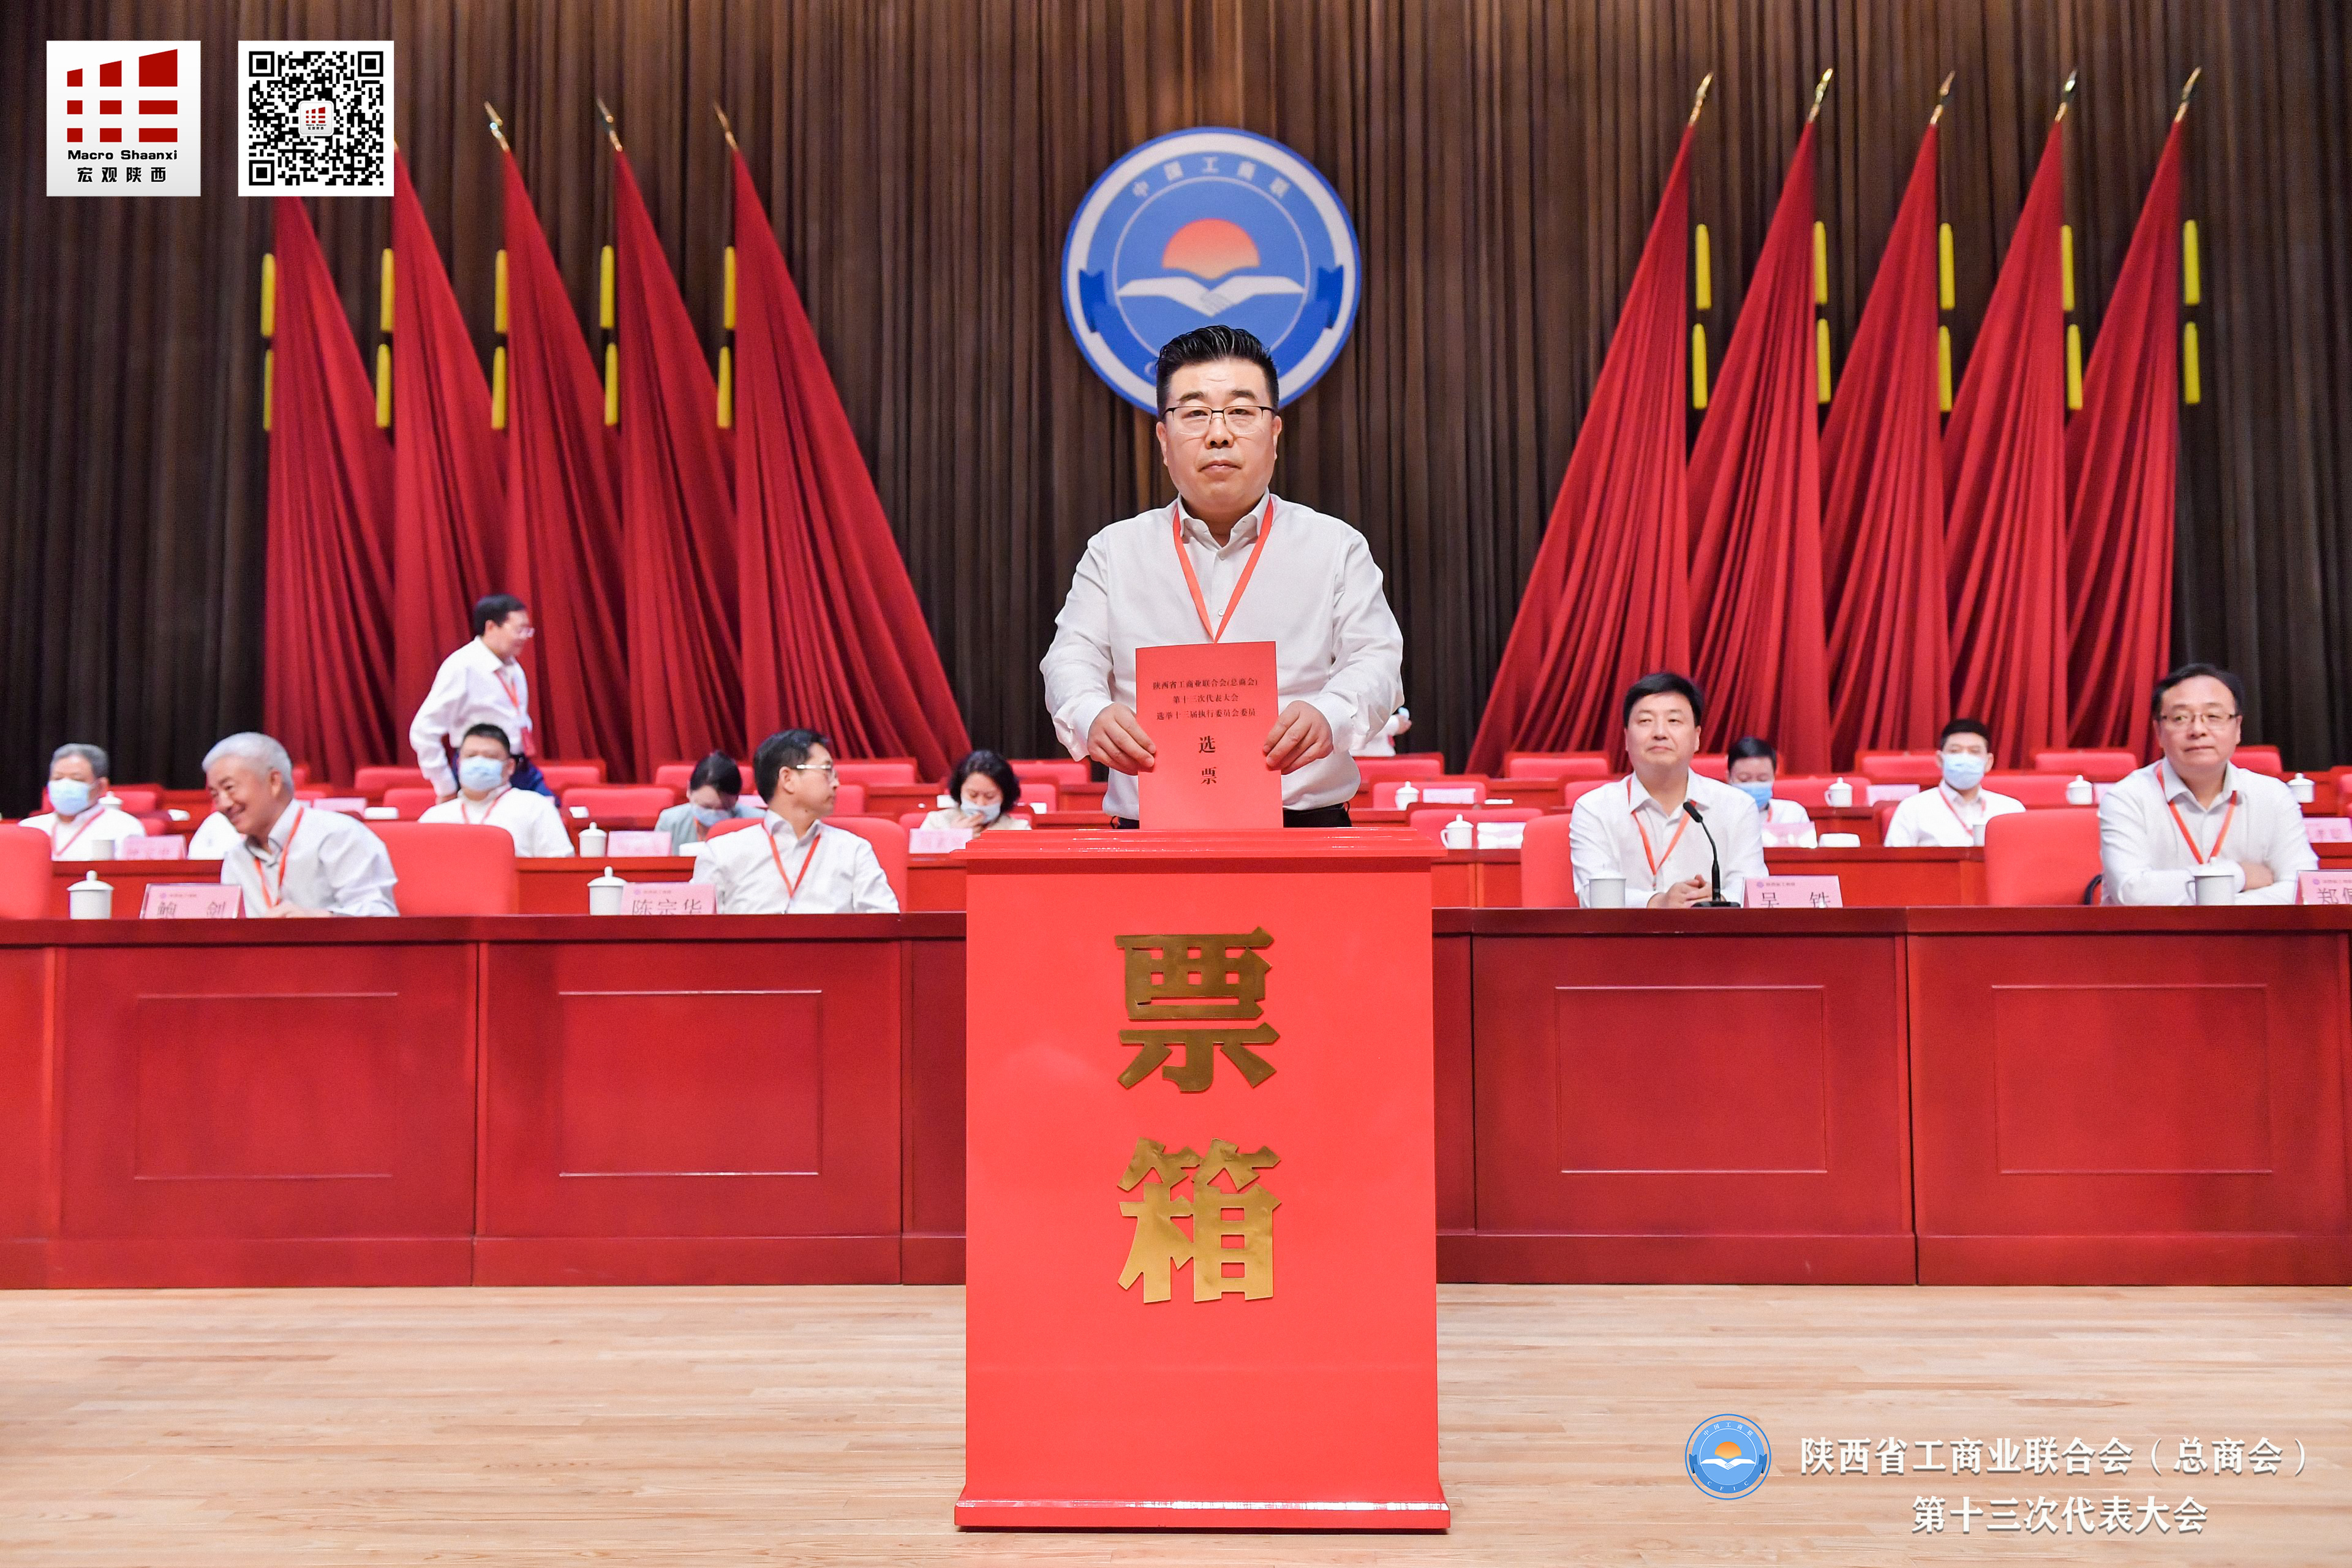 贺增林会长当选陕西省工商联第十三届执委会副主席